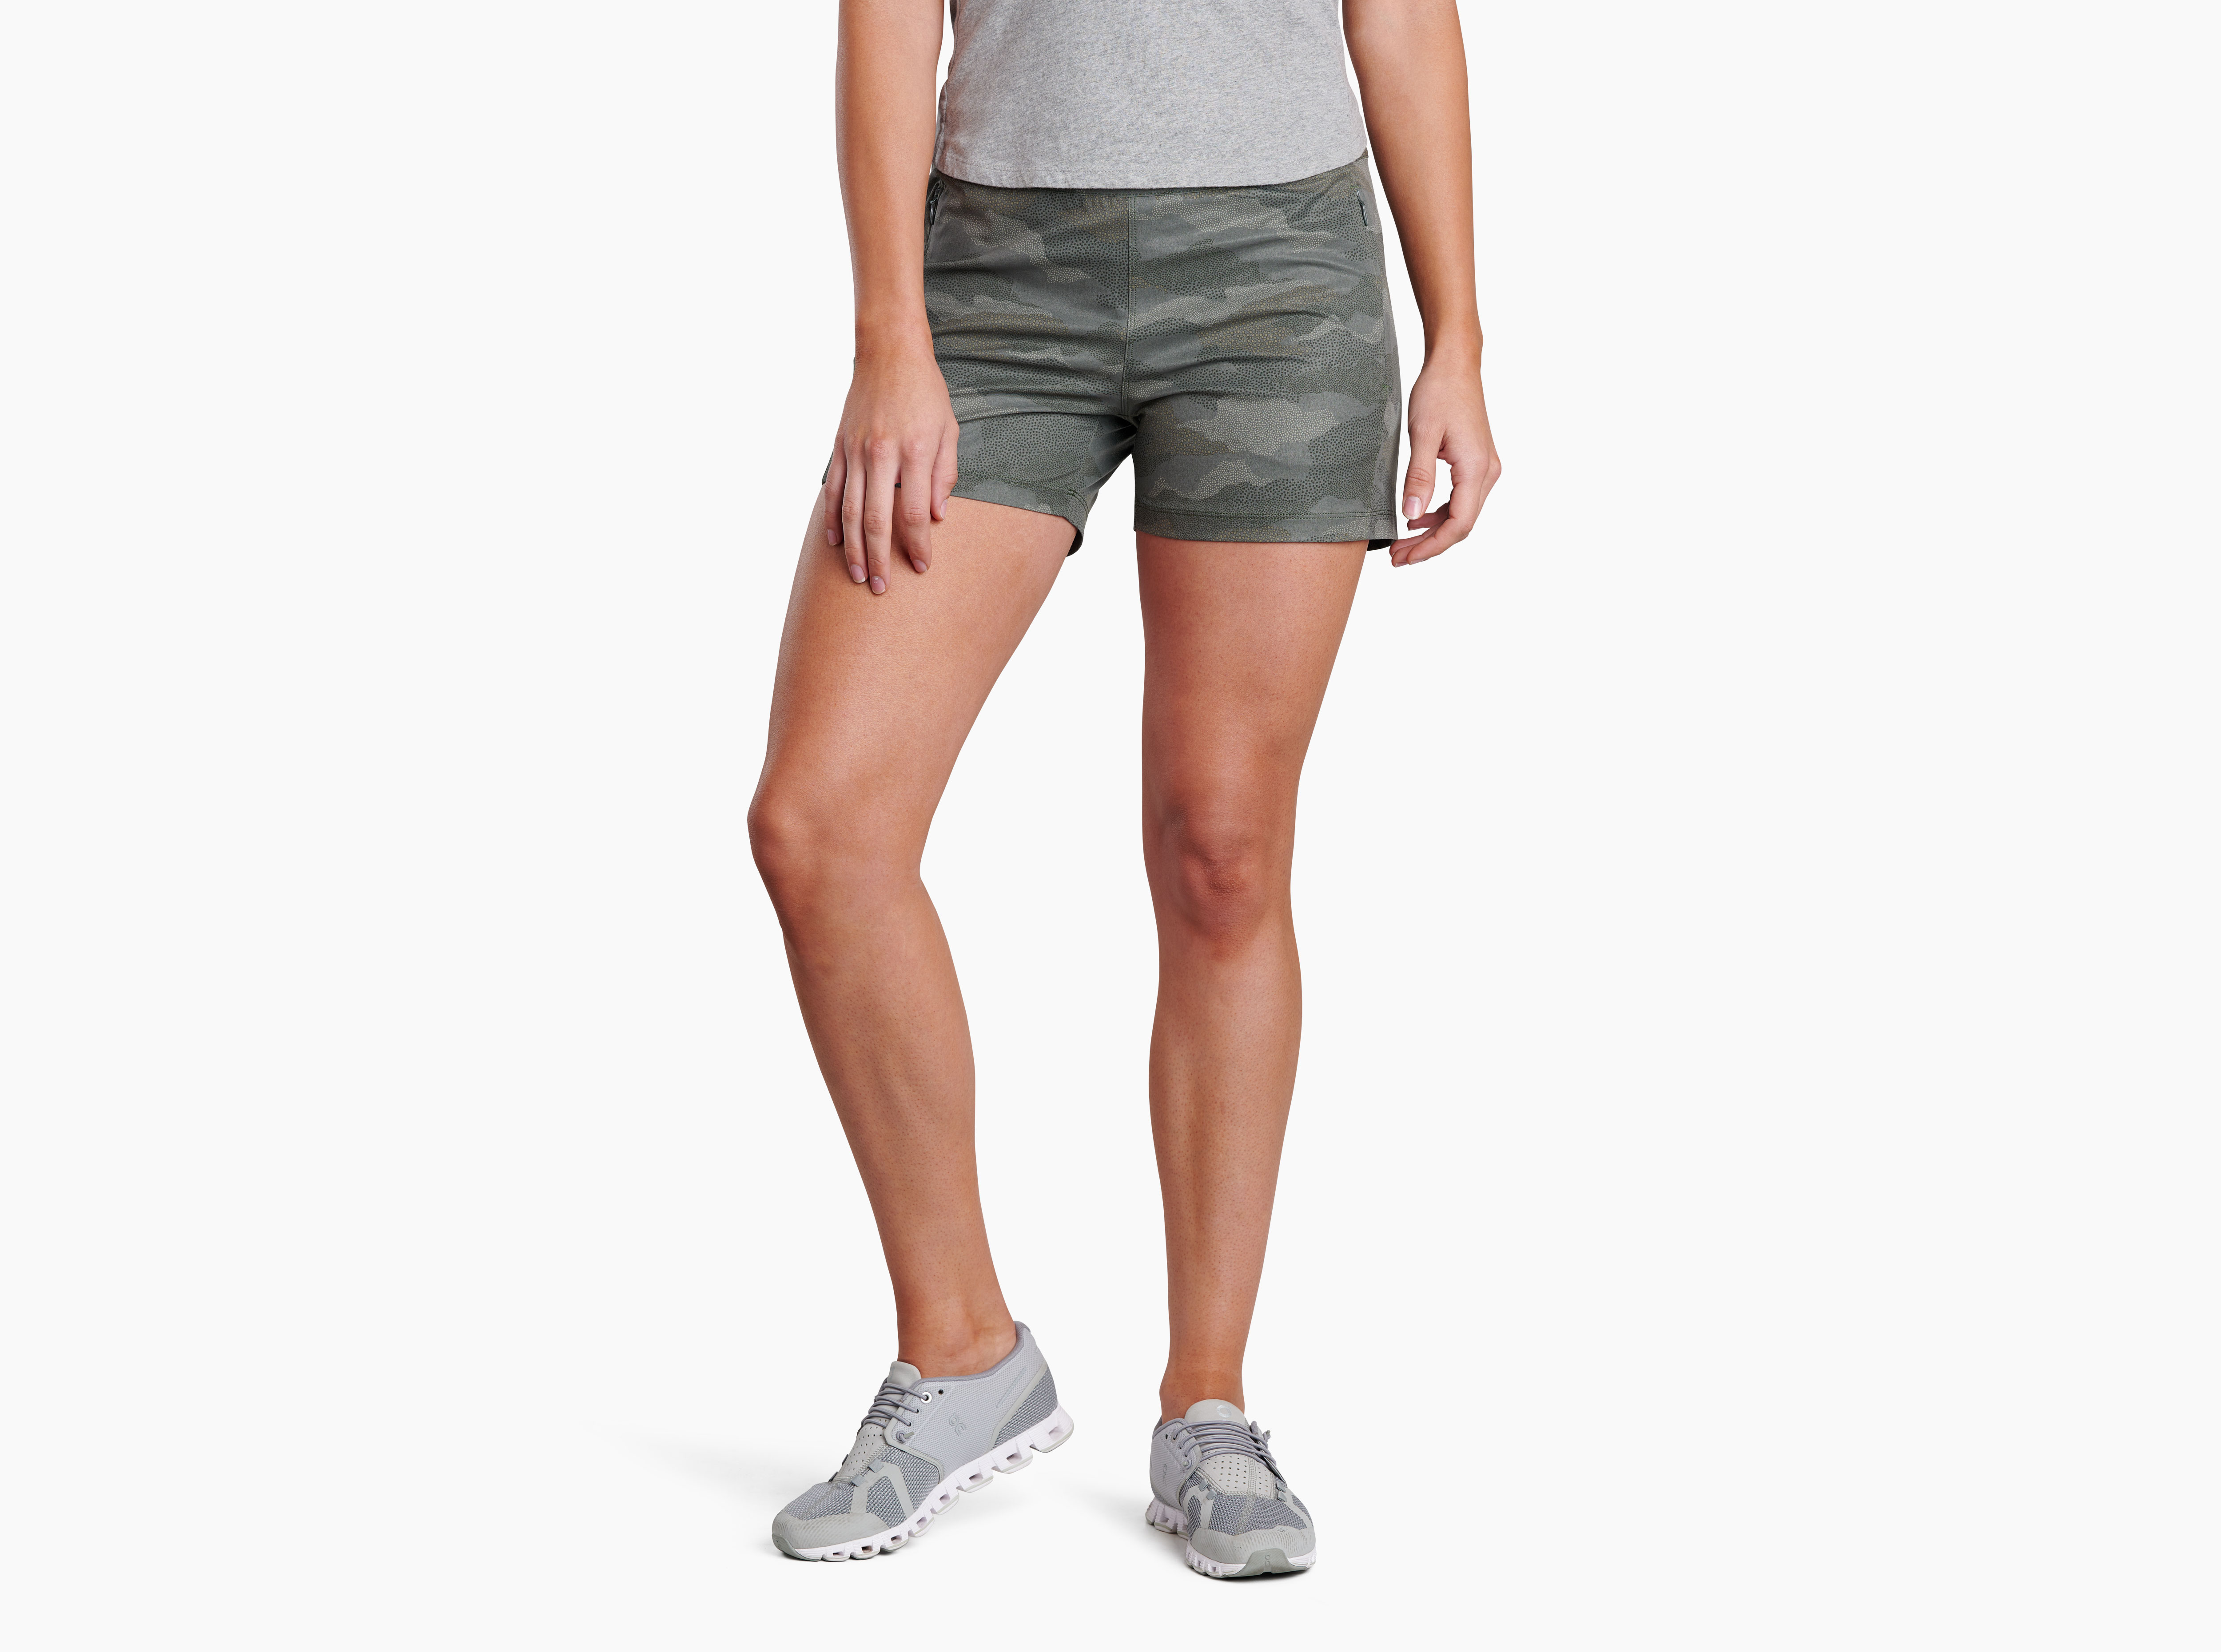 Freeflex™ Short in Women's Shorts